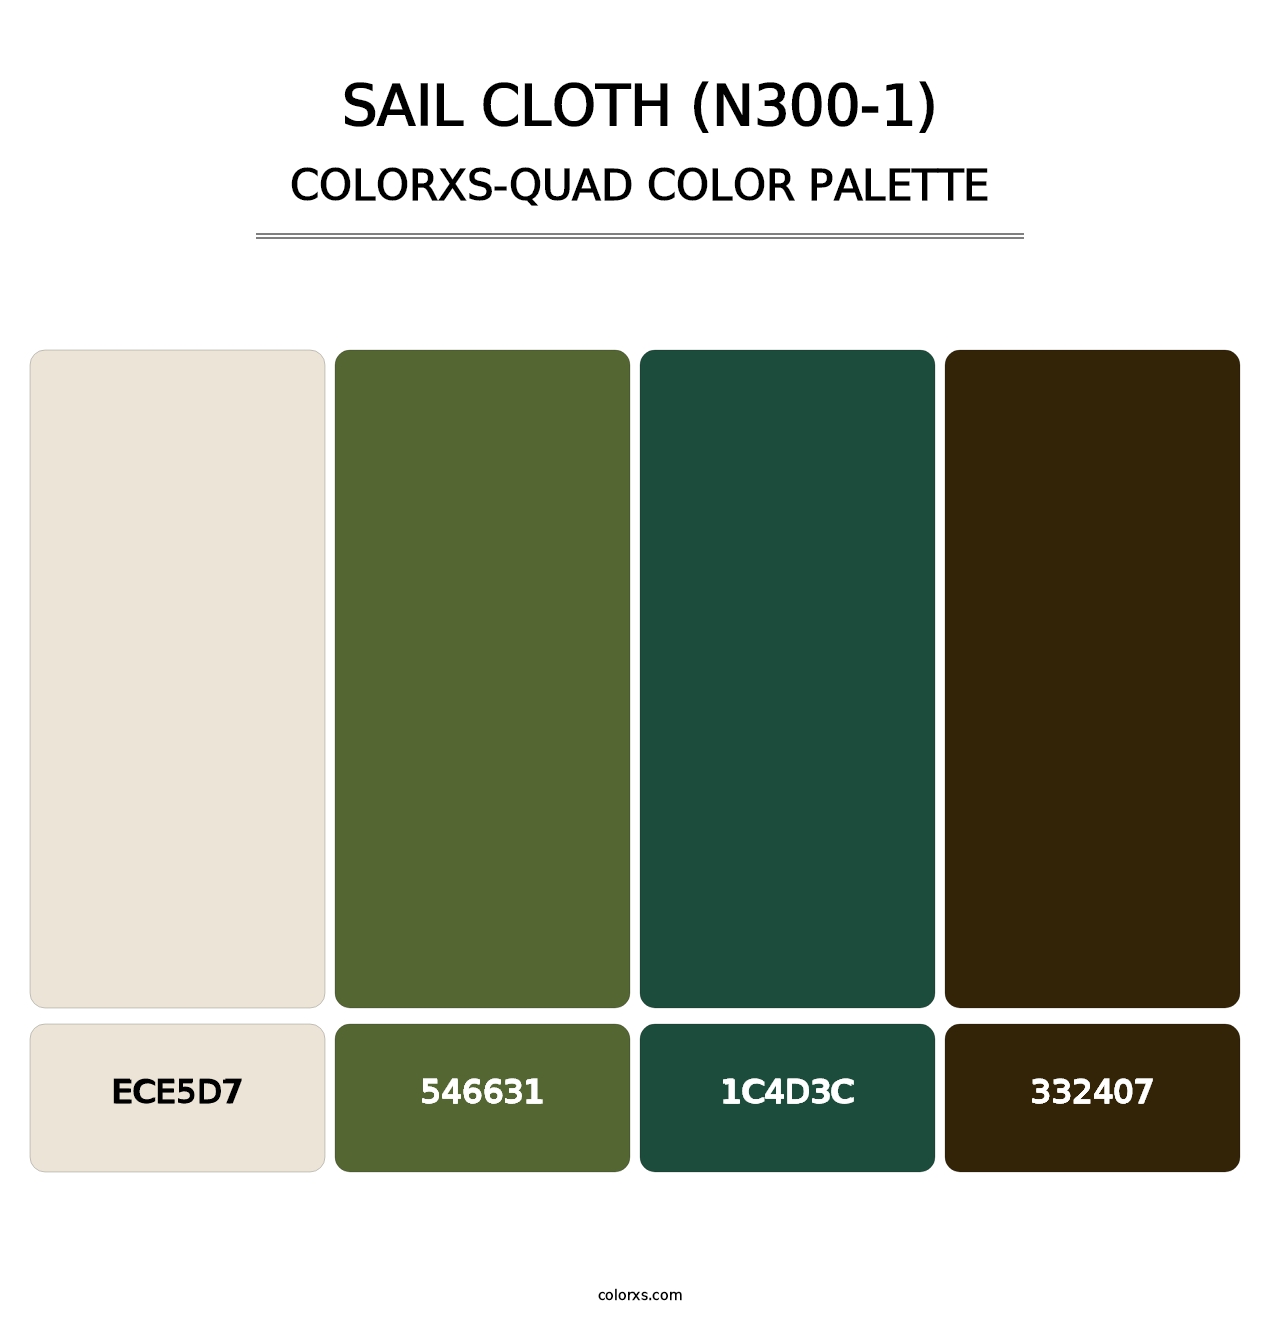 Sail Cloth (N300-1) - Colorxs Quad Palette